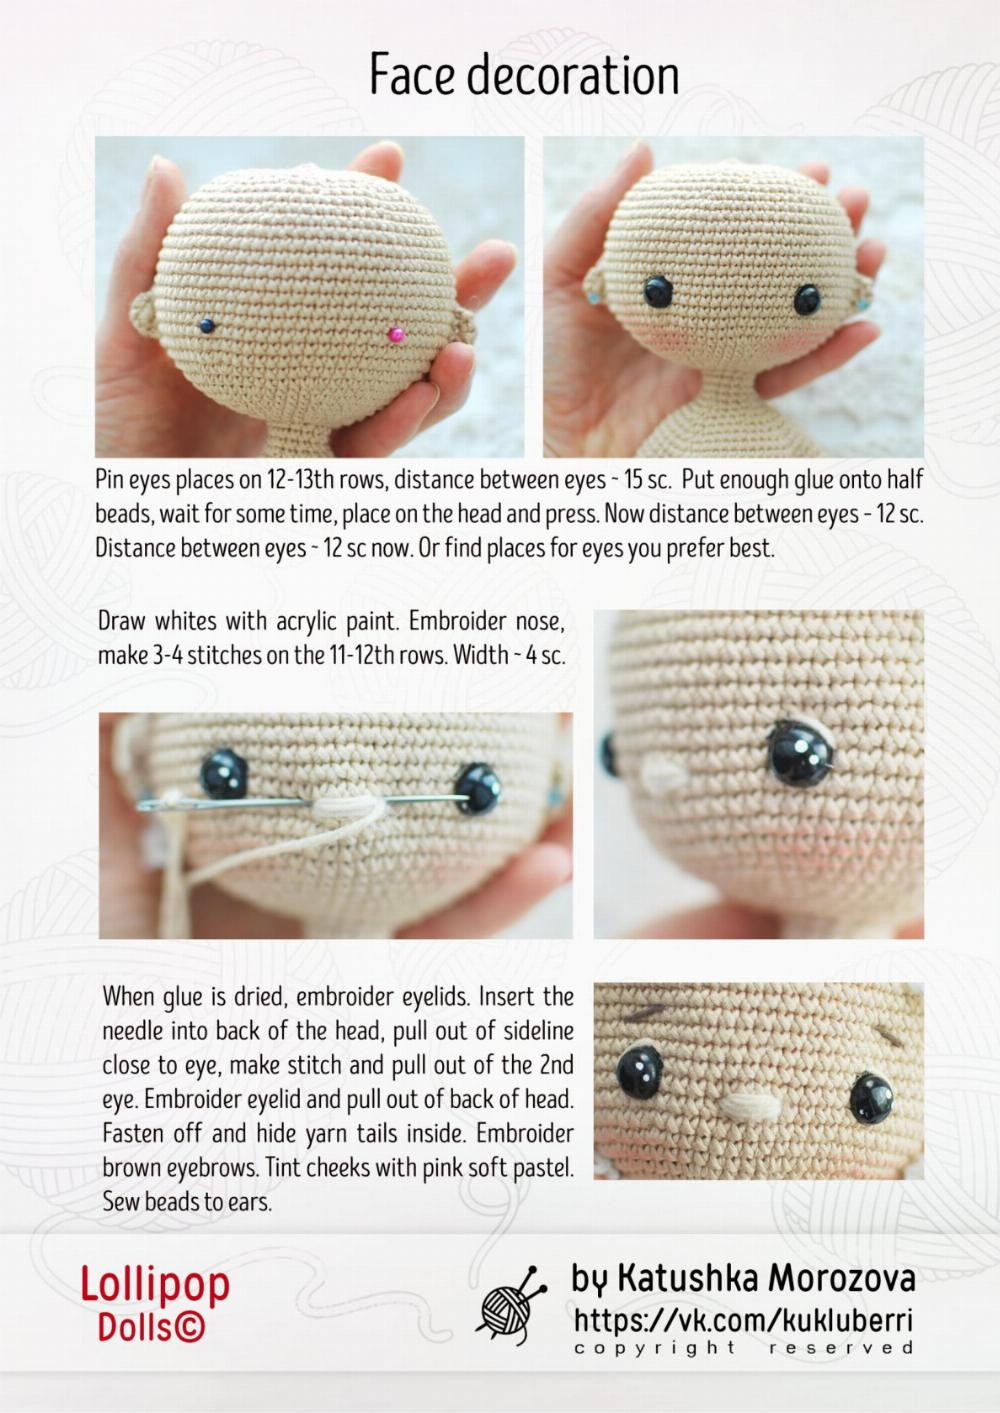 crochet doll pattern louisa the doll